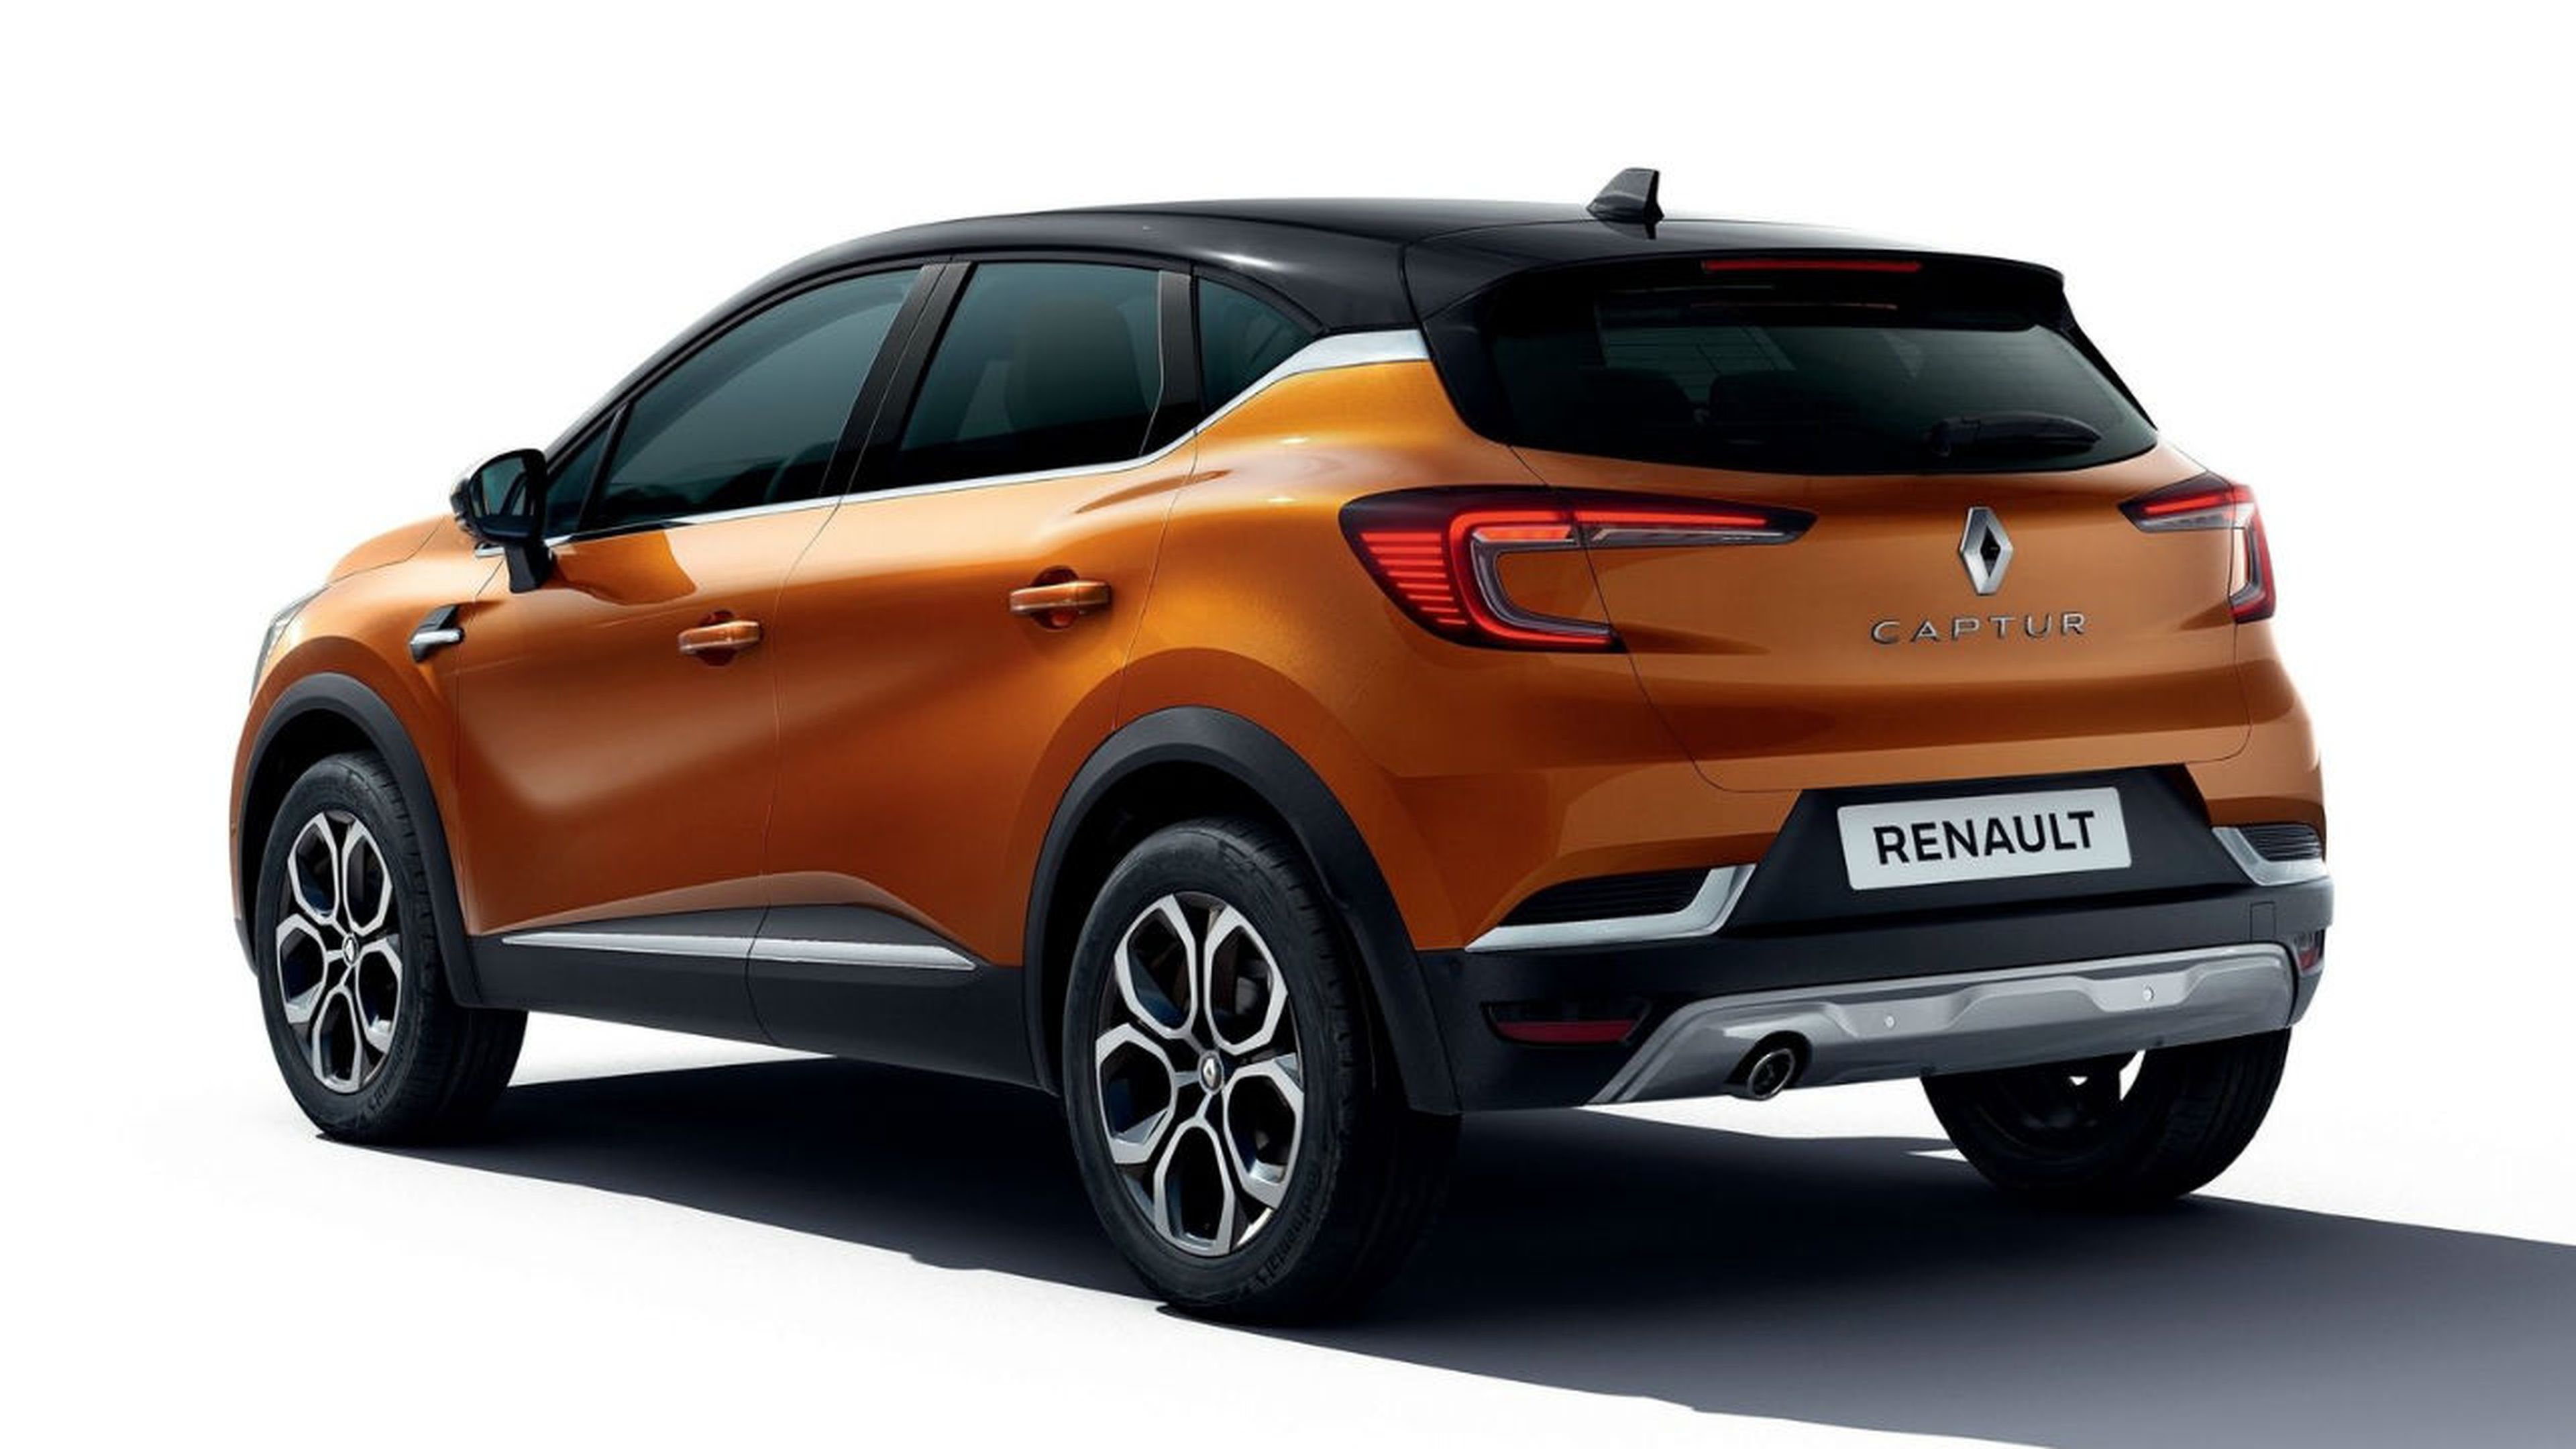 El nuevo Renault Captur tiene una imagen más refinada y vanguardista.